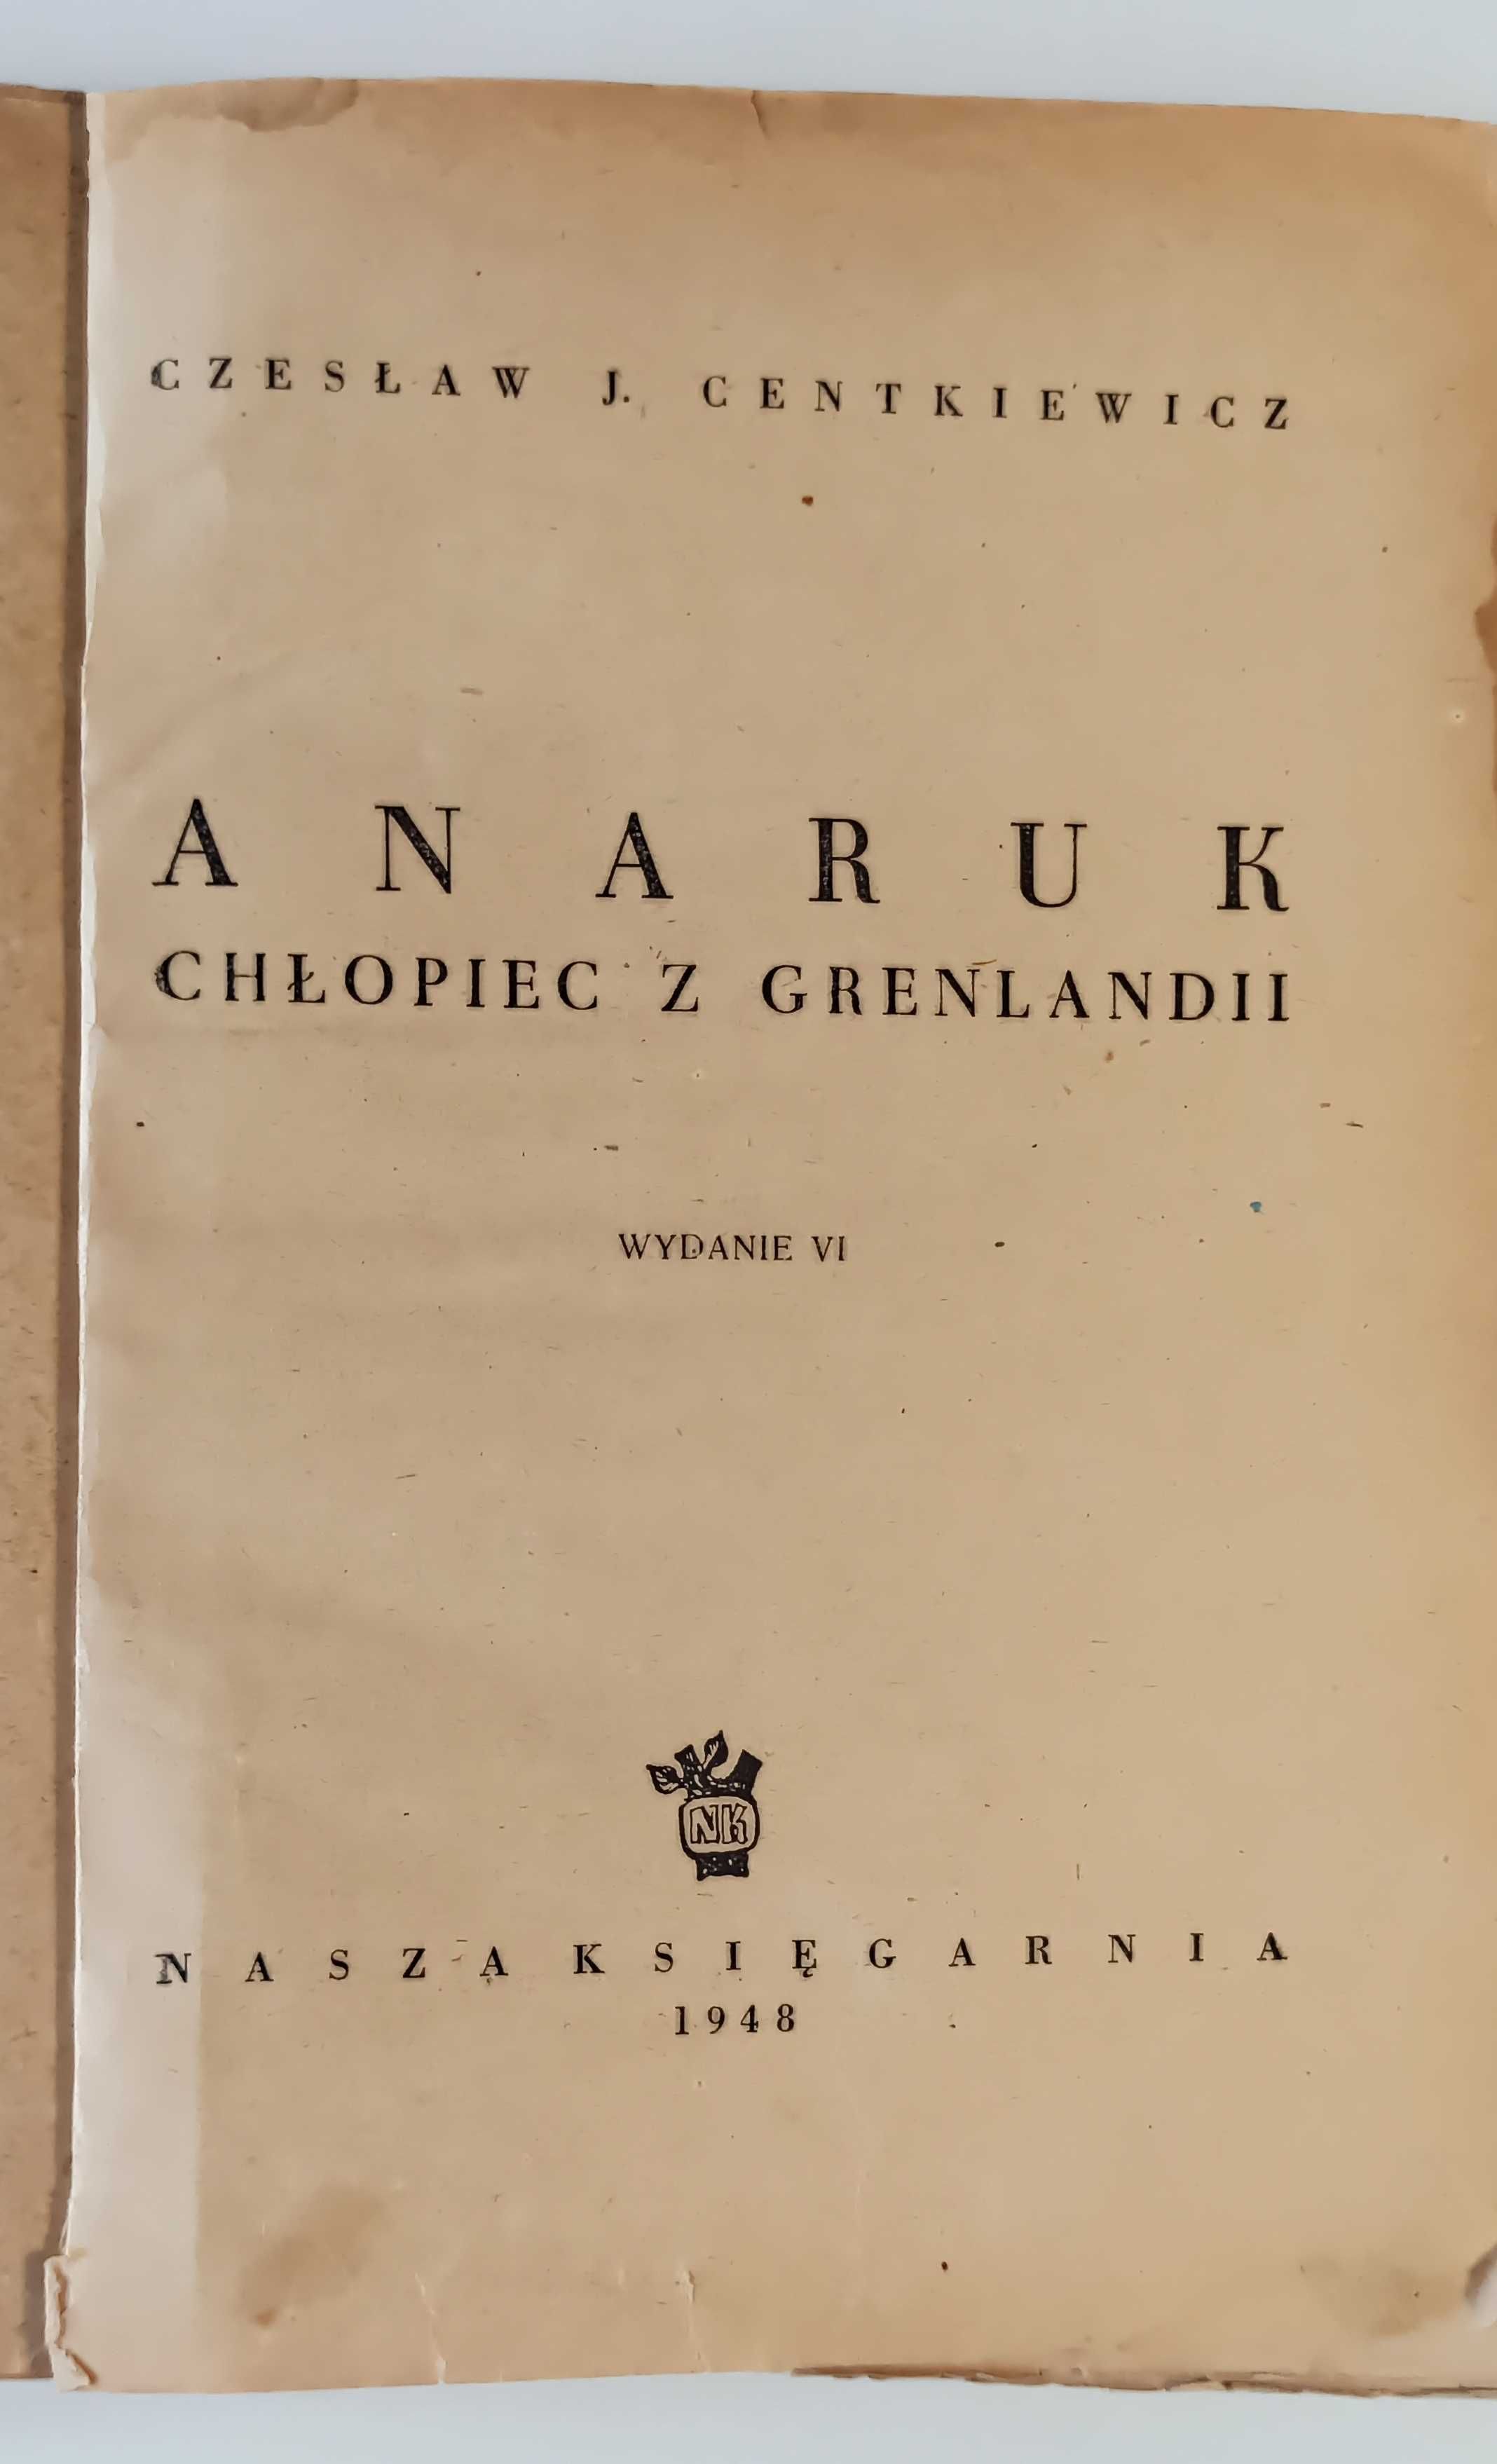 Anaruk chłopiec z Grenlandii - Centkiewicz 1948r